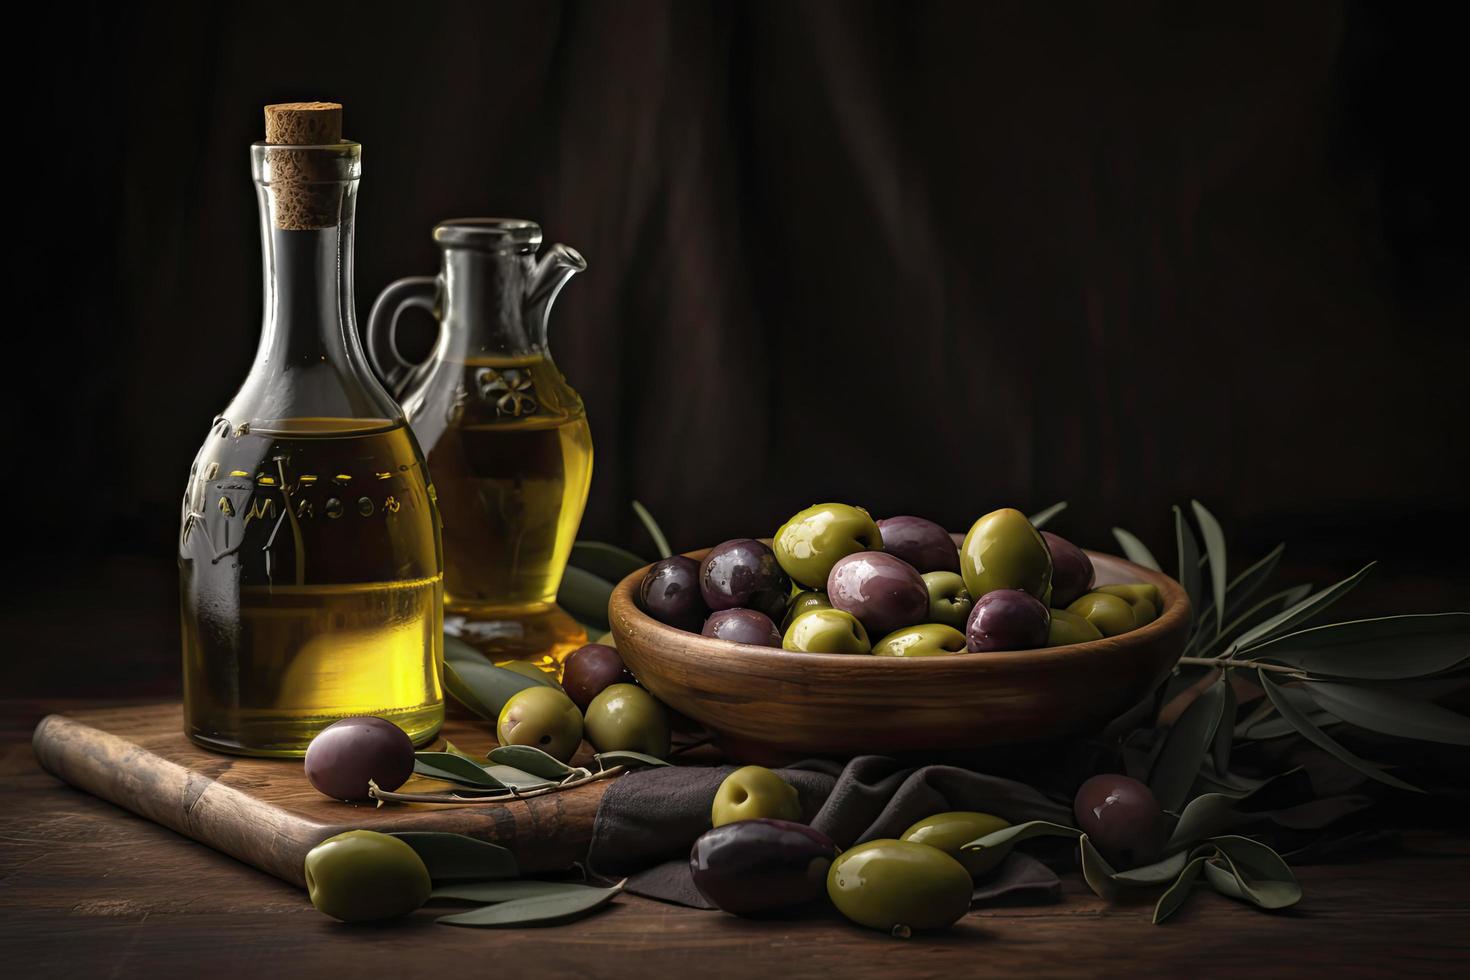 olive pétrole avec Frais Olives sur rustique bois proche en haut photo